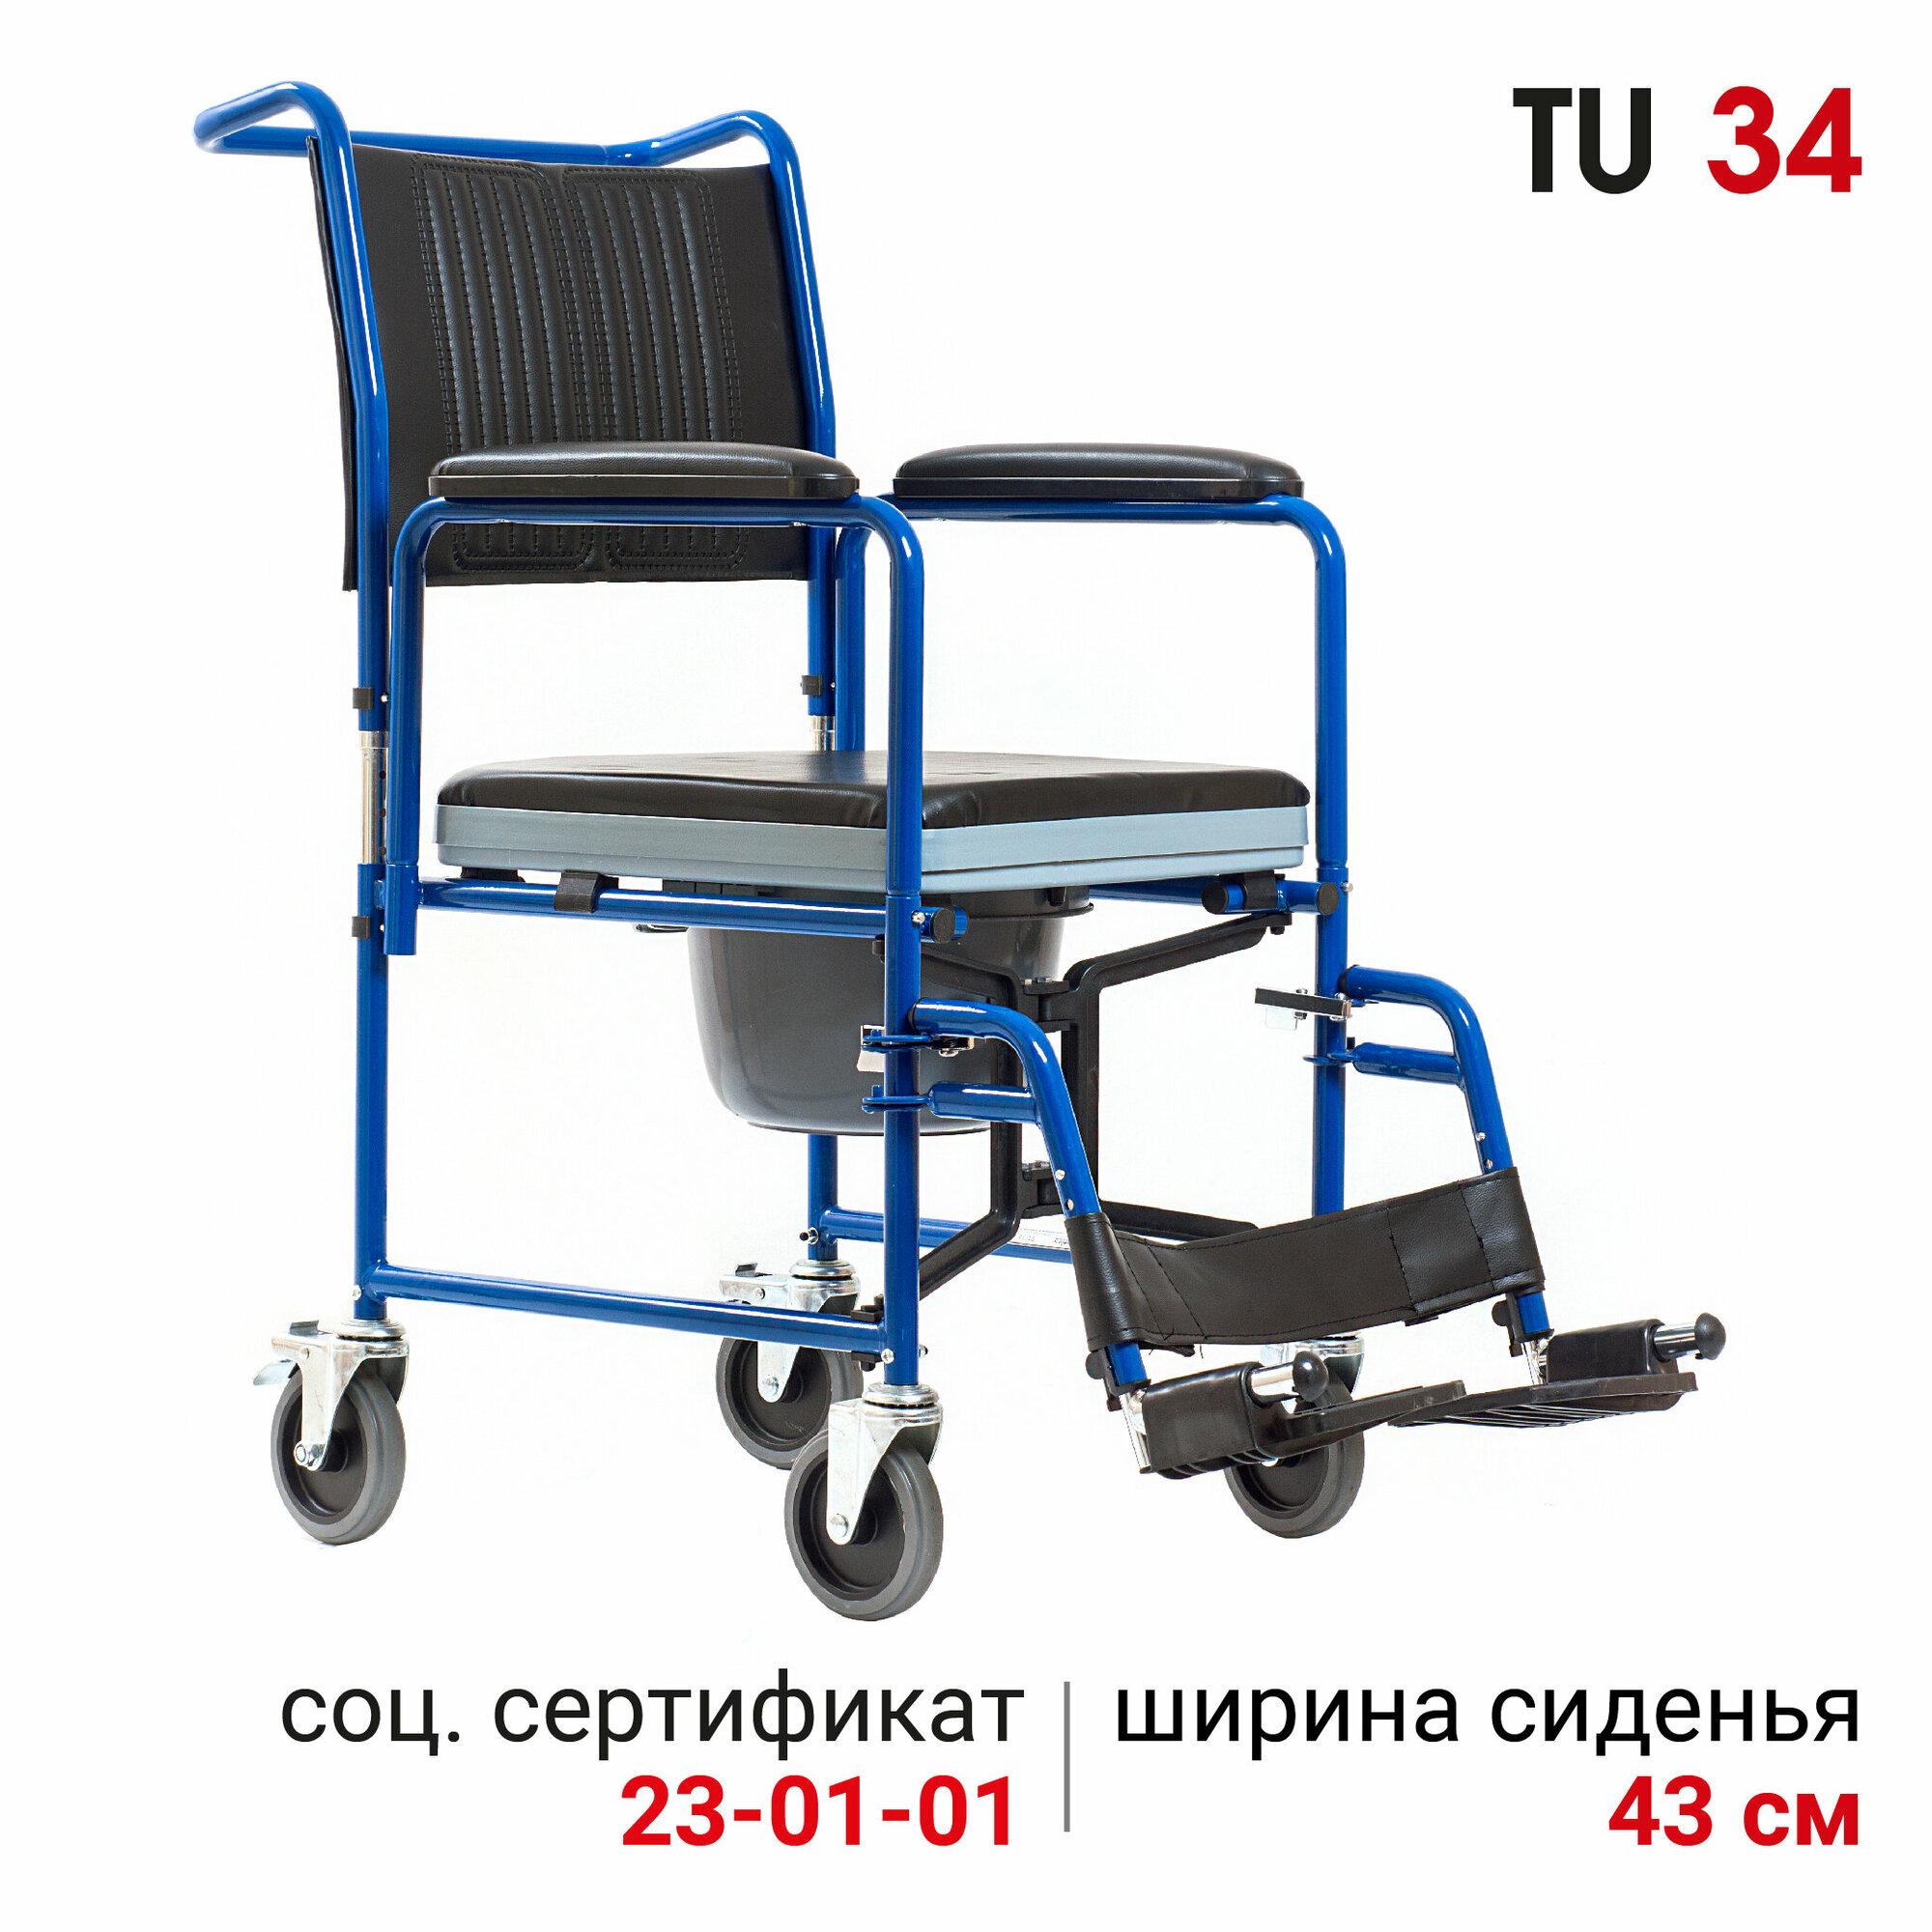 Кресло - коляска - туалет для инвалидов и пожилых со съемными подлокотниками Ortonica TU 34 ширина сиденья 43 см Код ФСС 23-01-01